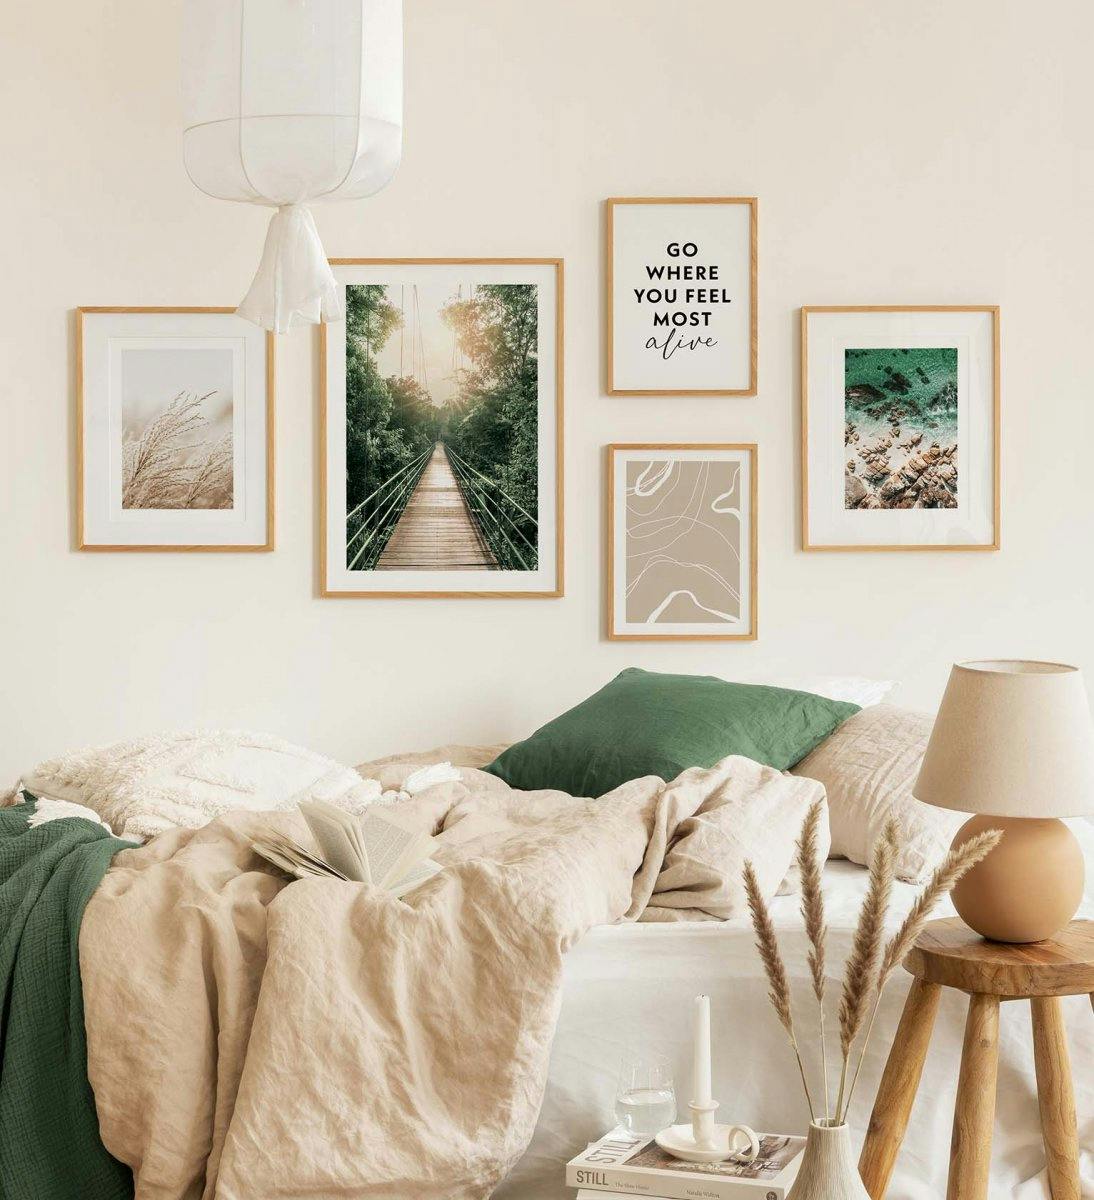 Grøn billedvæg med naturfotografier kombineret med citater og stregkunst til soveværelset